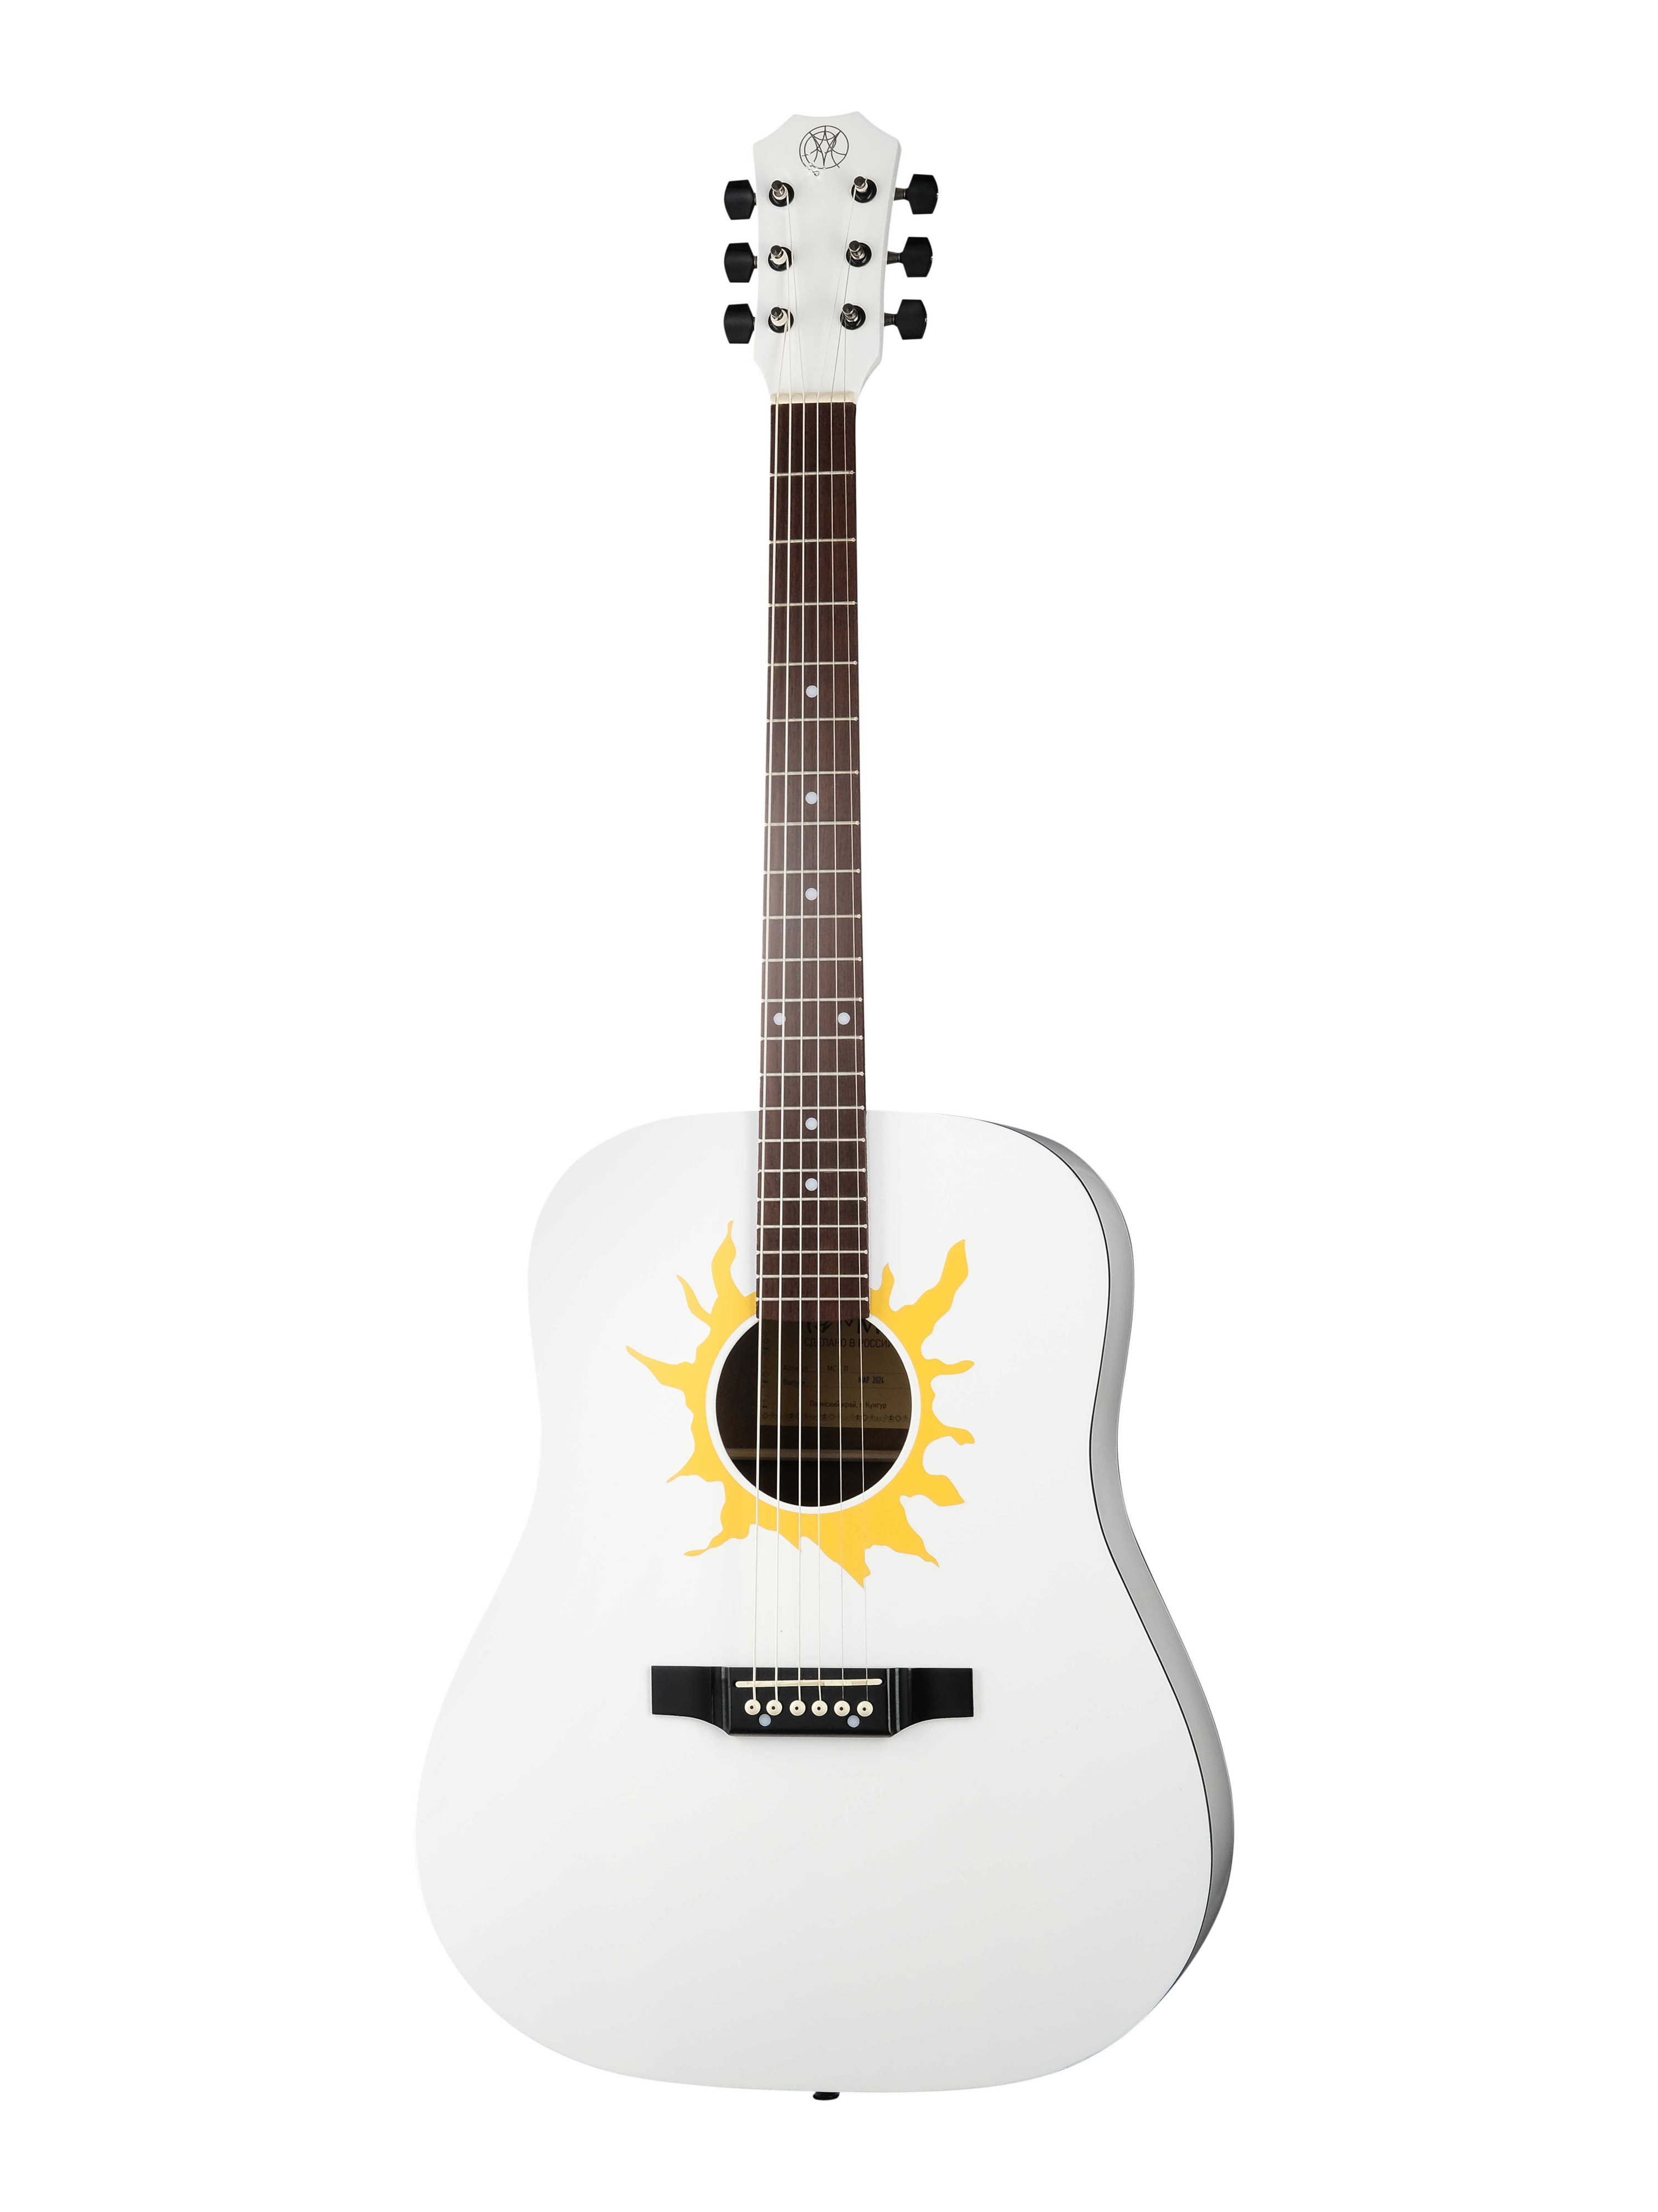 Акустические гитары Парма MC-11 черная монстра и белый хвост